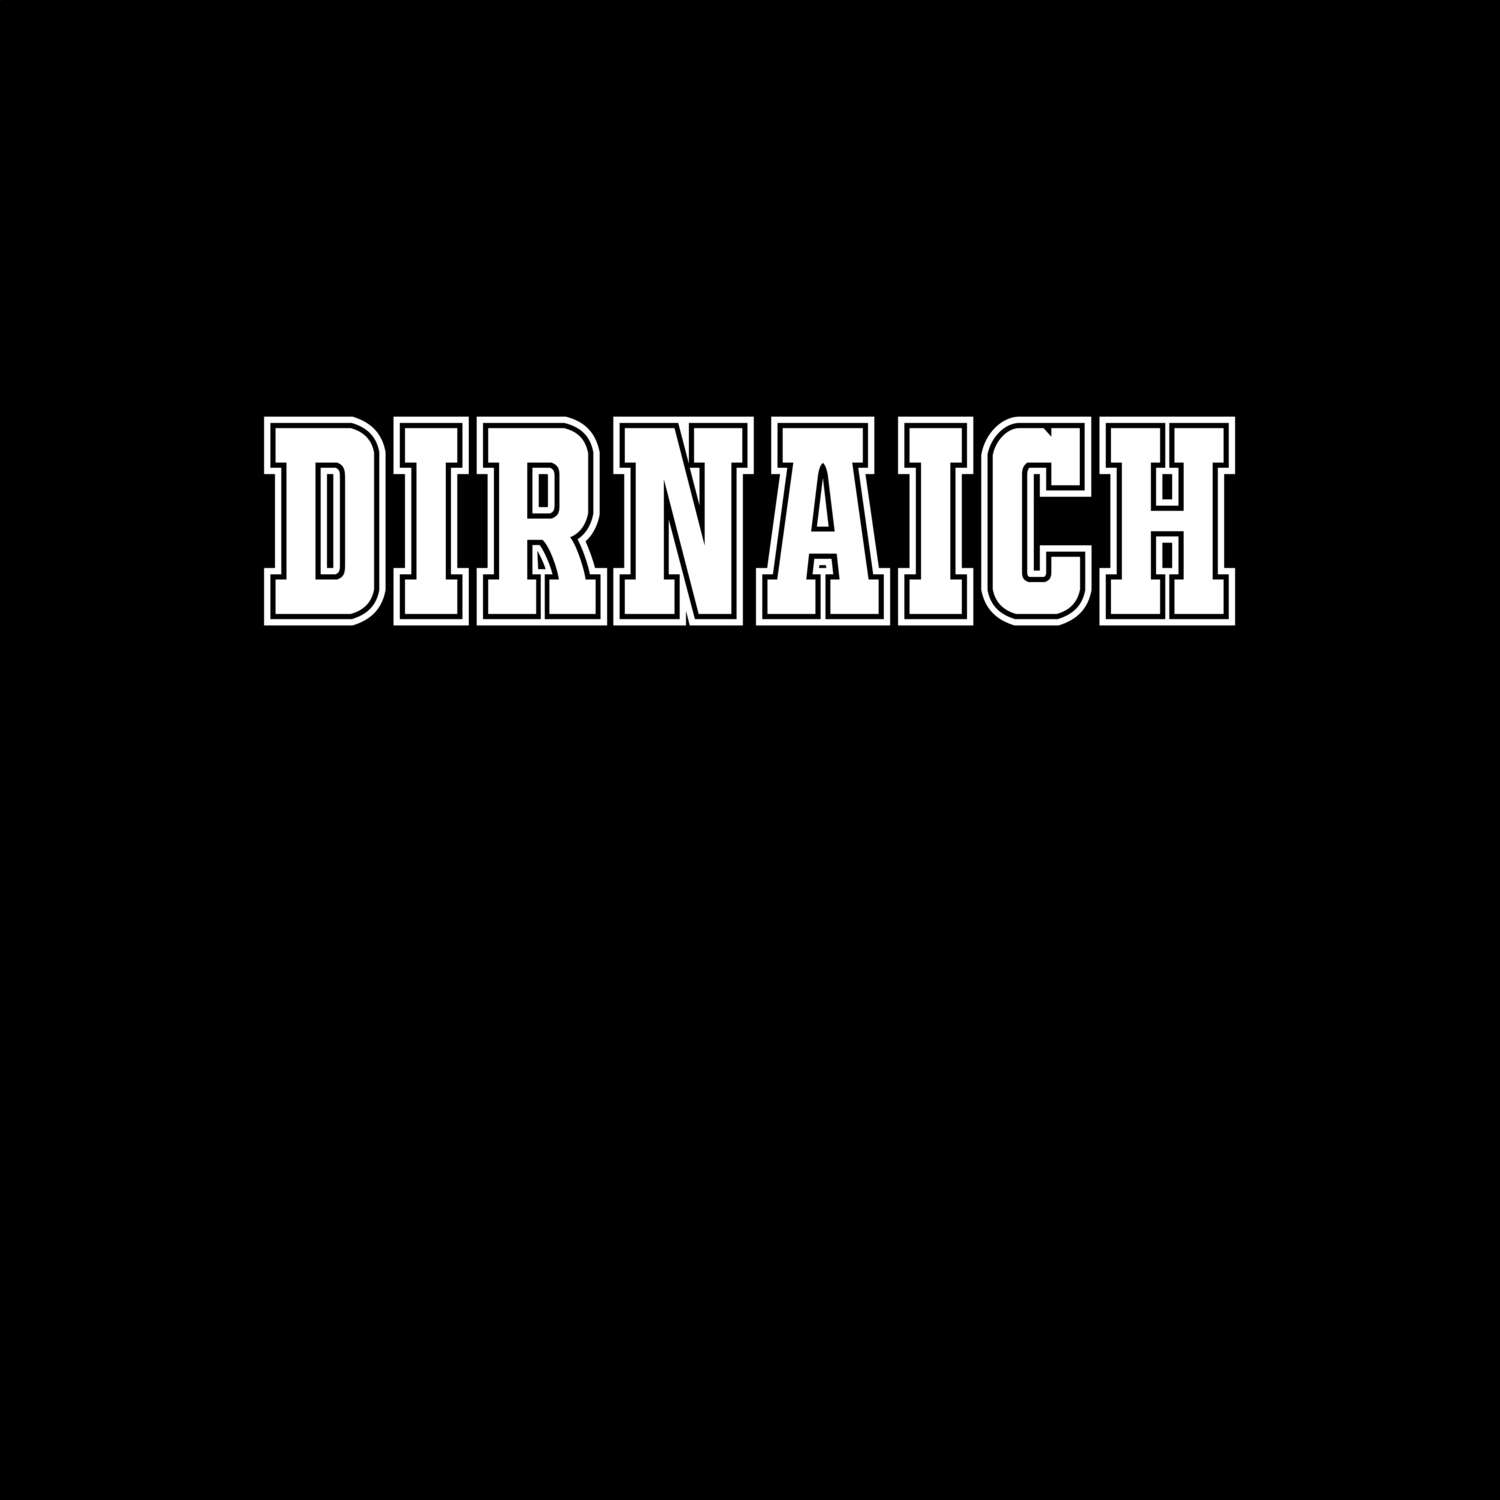 Dirnaich T-Shirt »Classic«